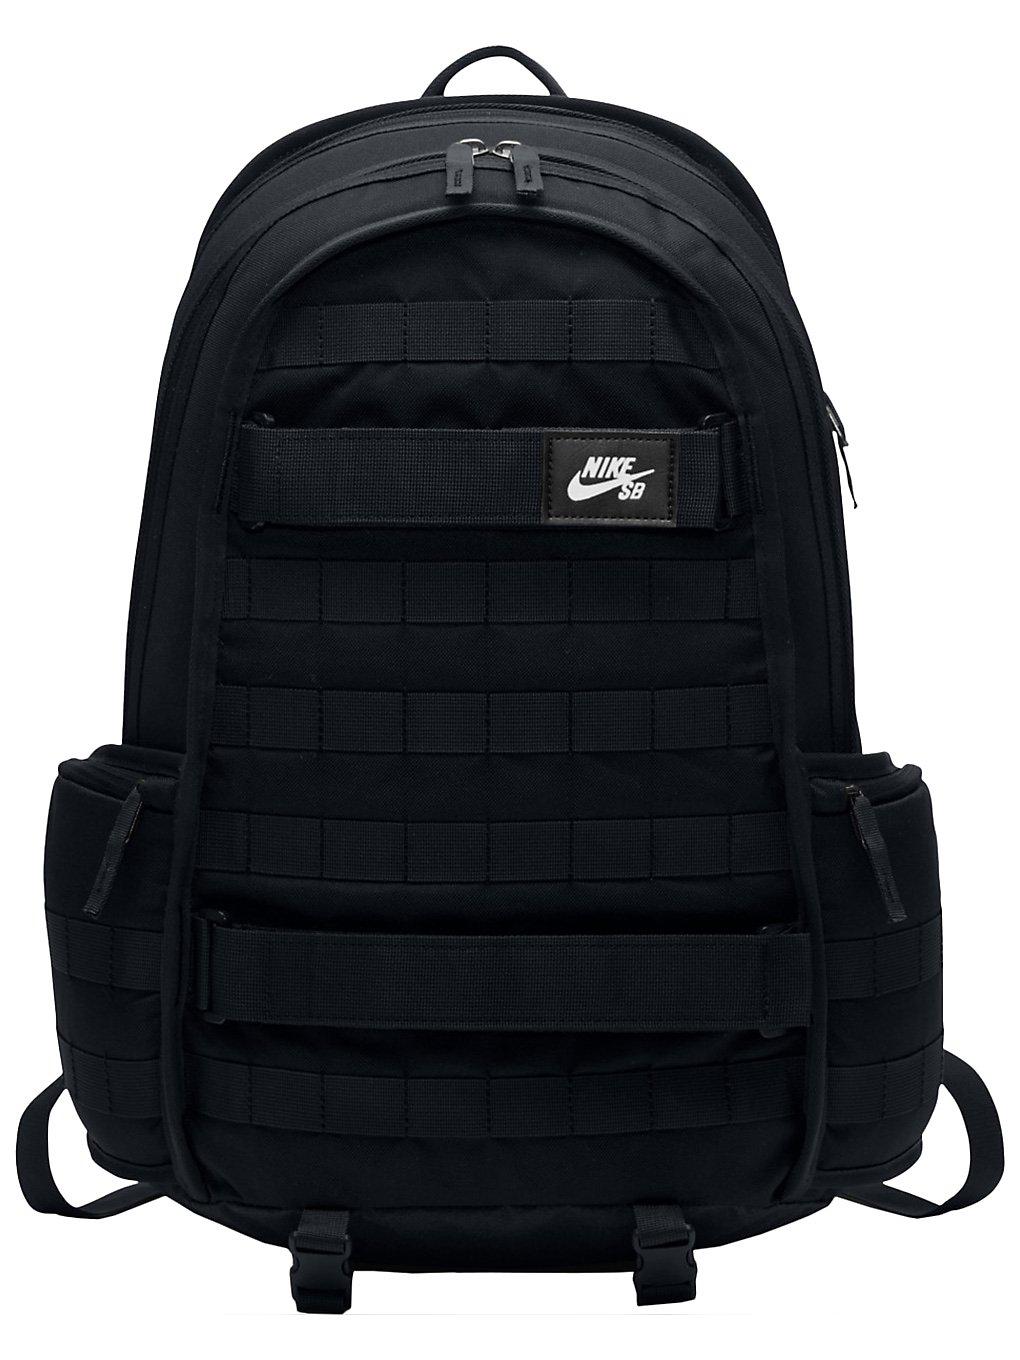 Nike rpm backpack musta, nike